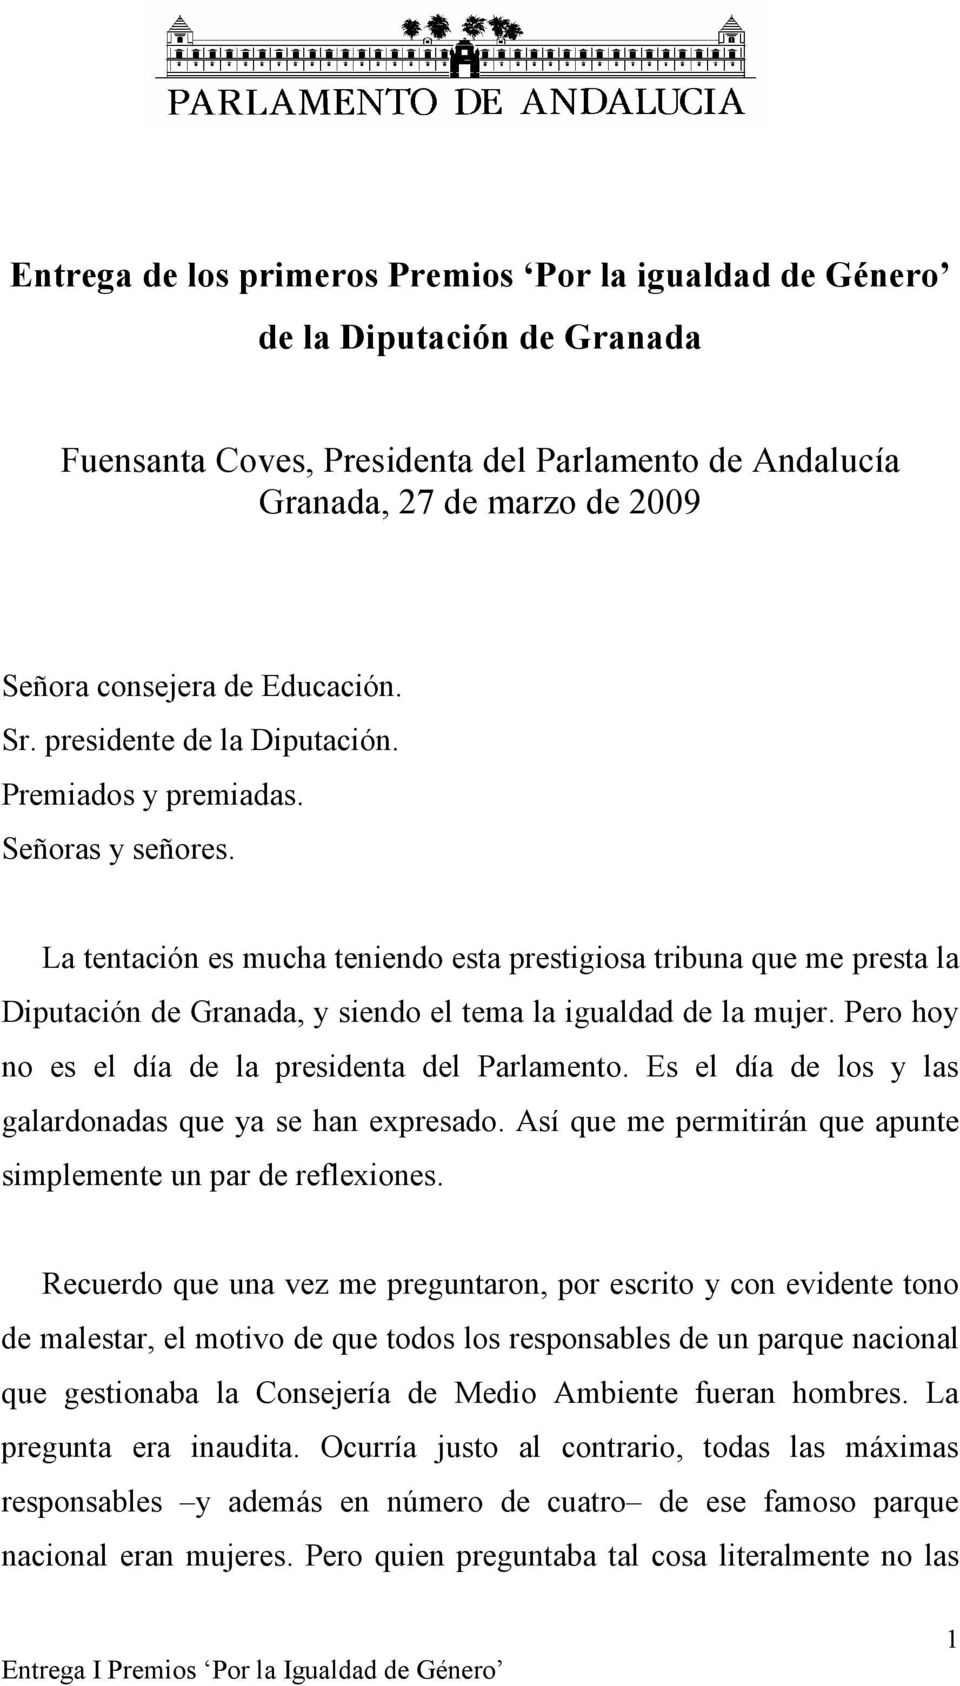 La tentación es mucha teniendo esta prestigiosa tribuna que me presta la Diputación de Granada, y siendo el tema la igualdad de la mujer. Pero hoy no es el día de la presidenta del Parlamento.